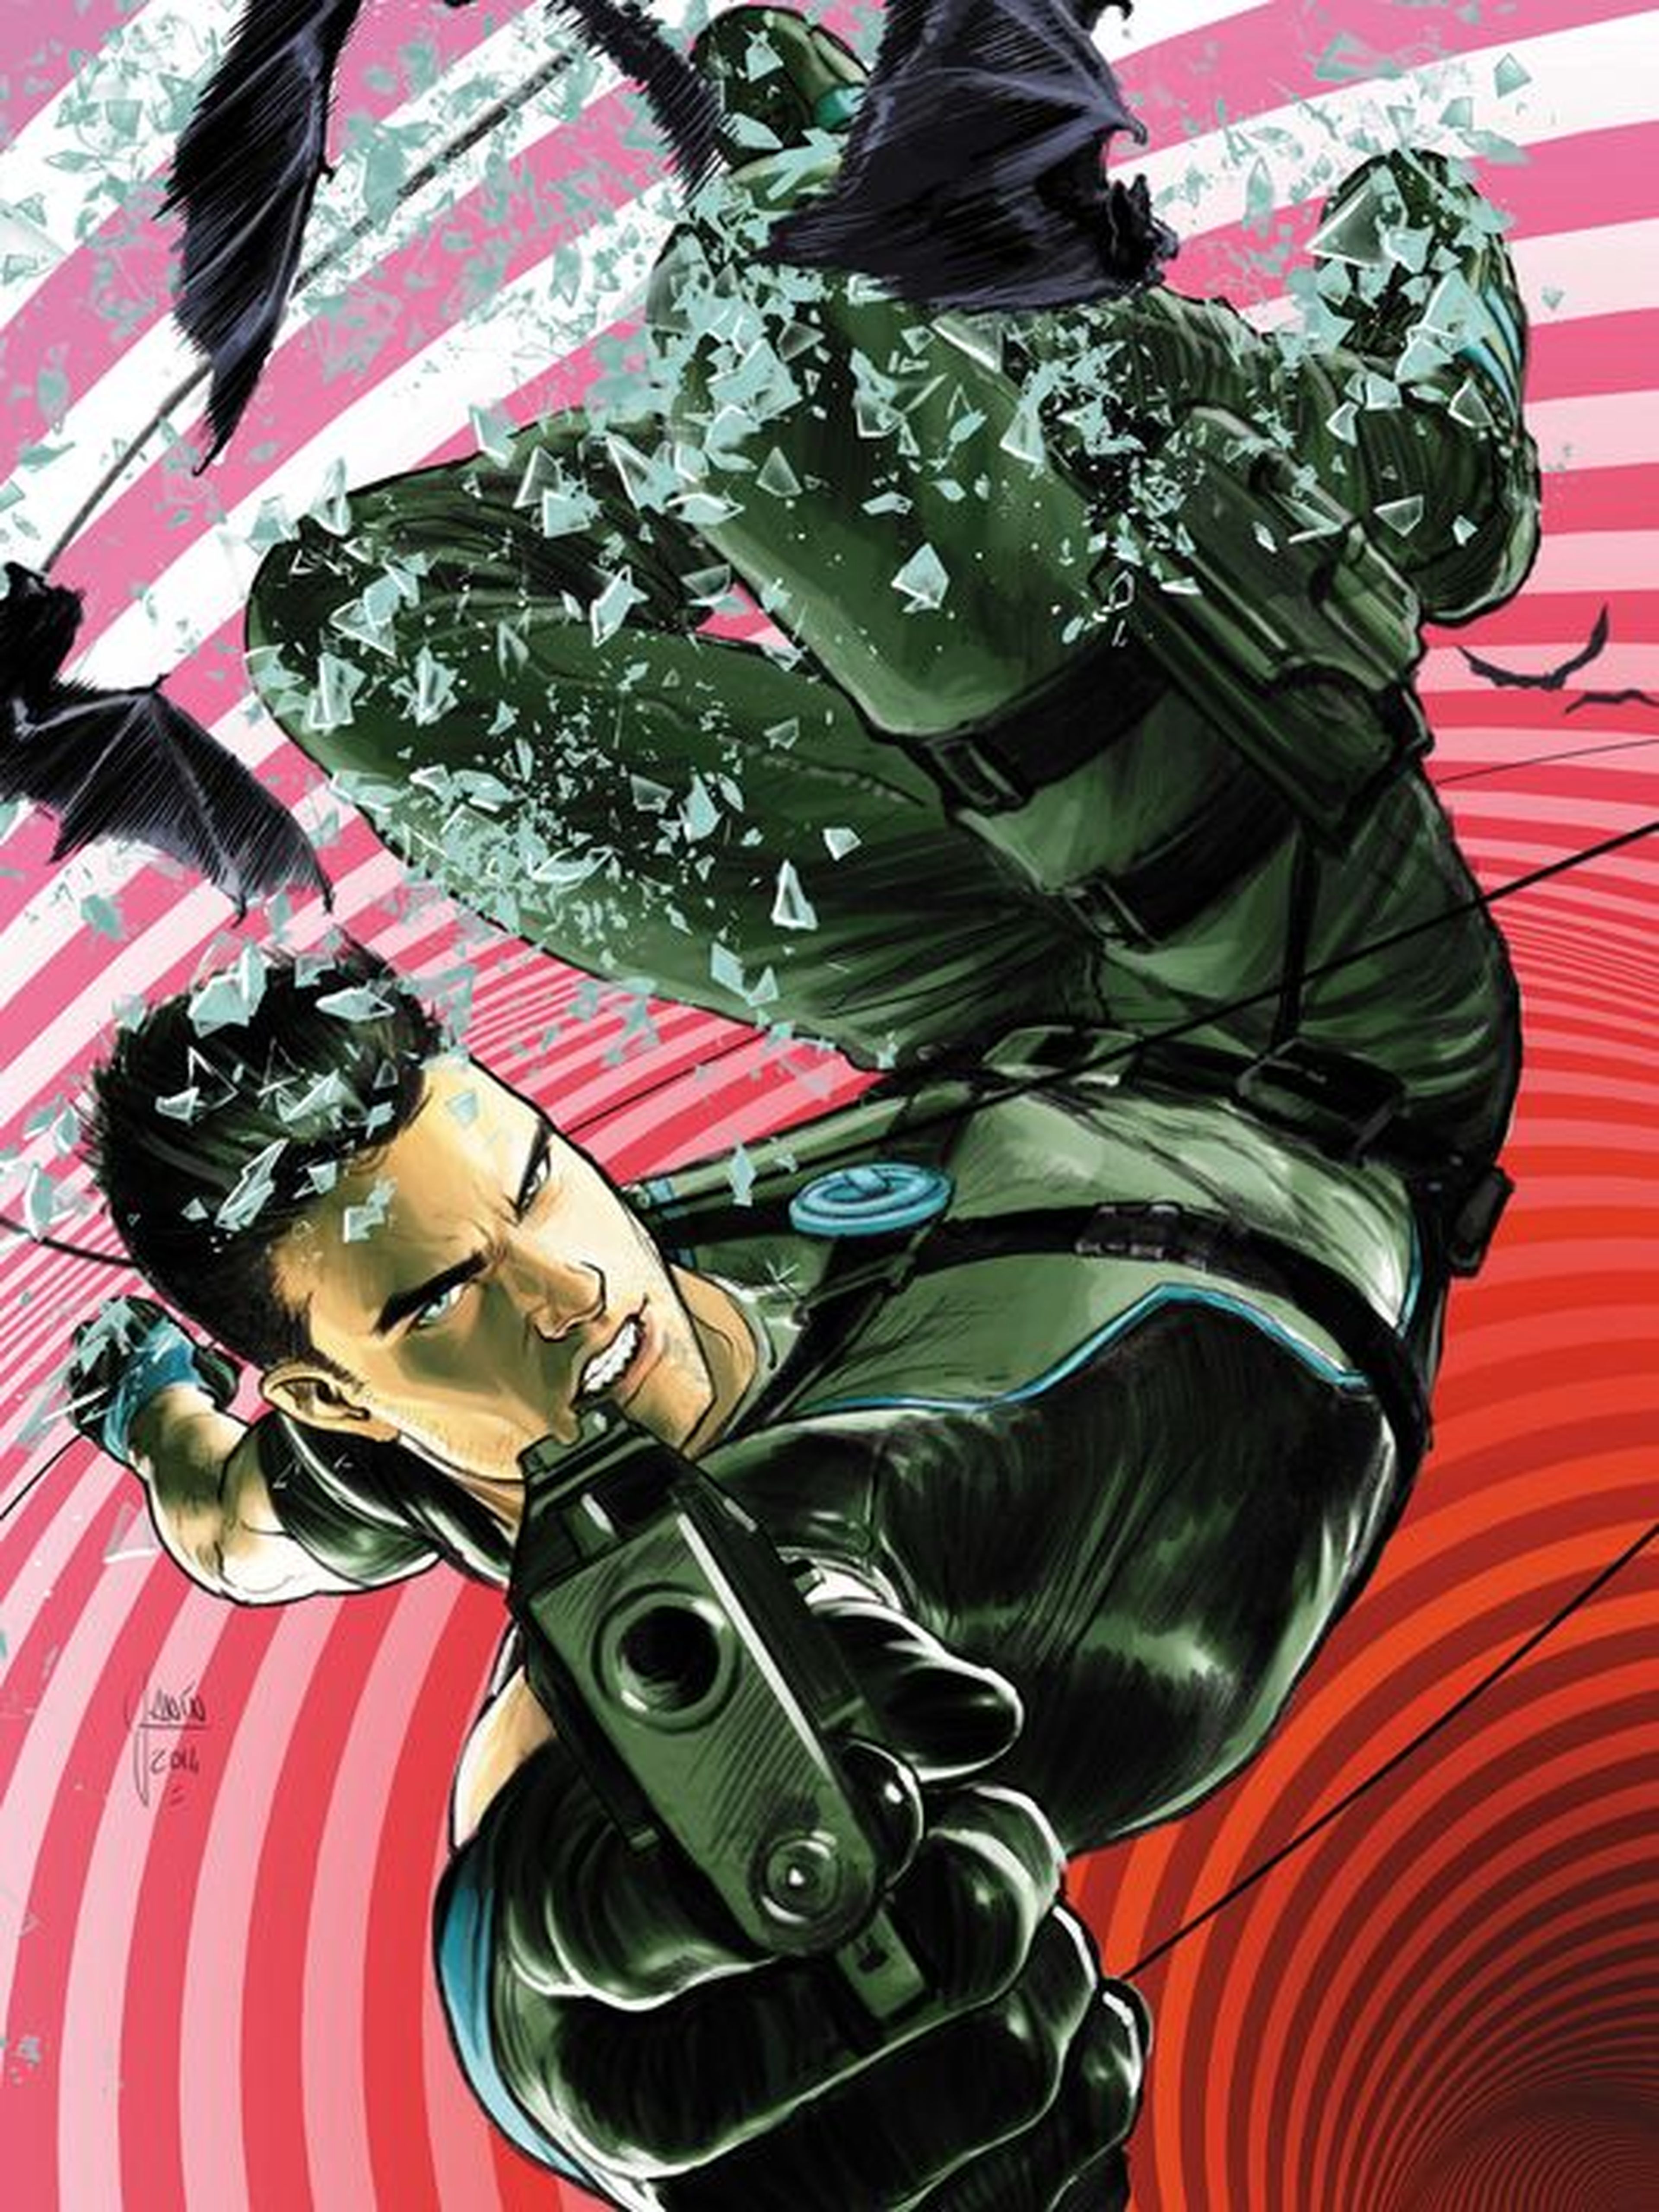 Nightwing volverá en el cómic Grayson